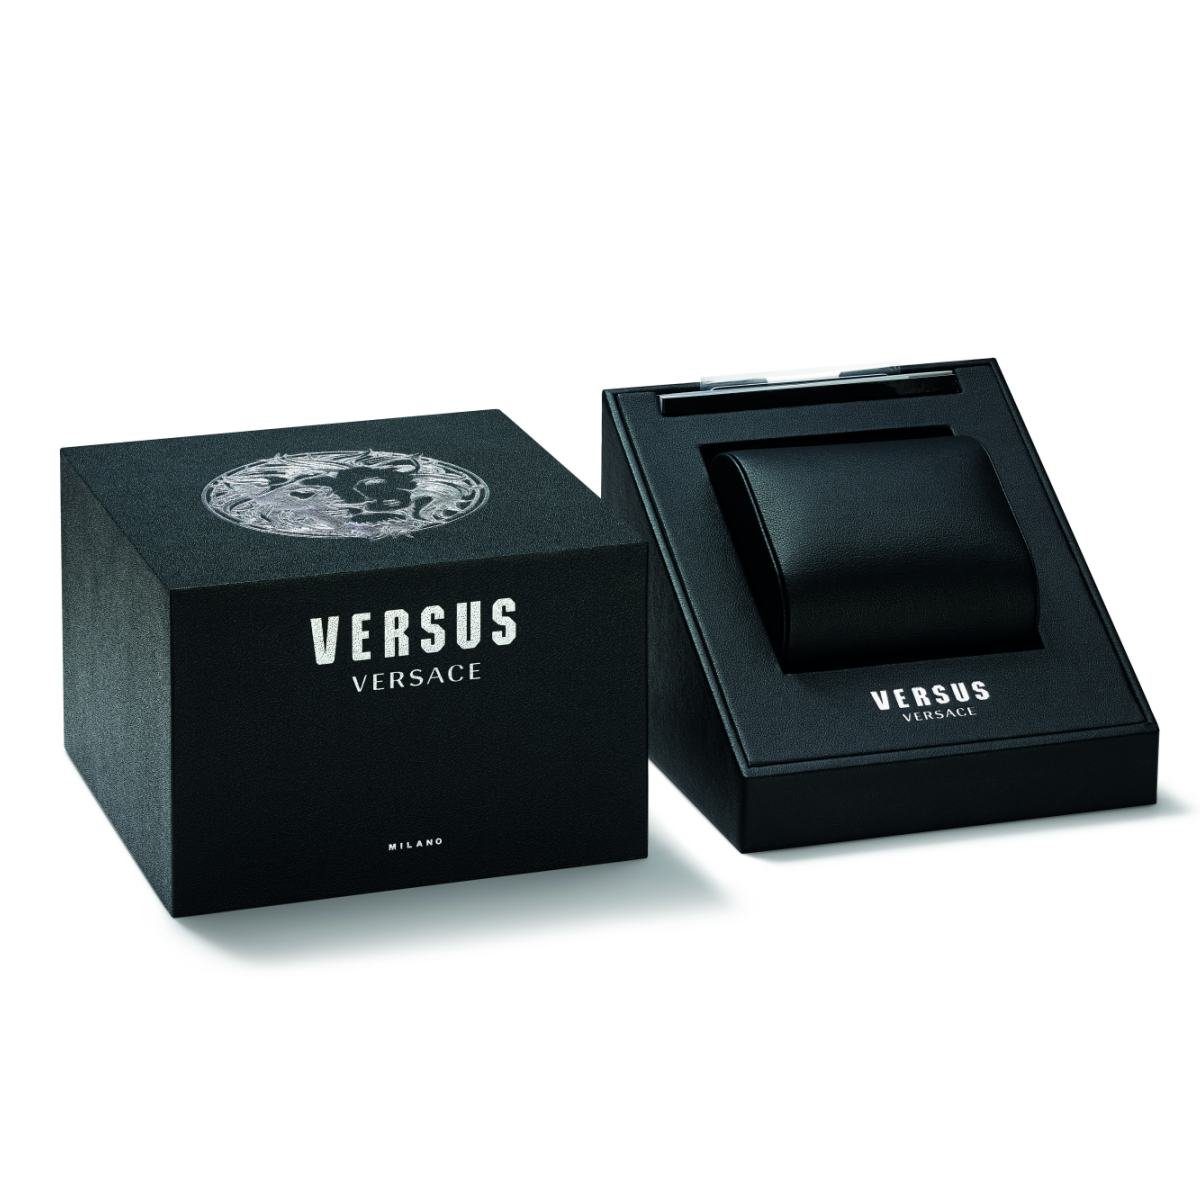 Versus Versace VSP791618 Quarzuhr